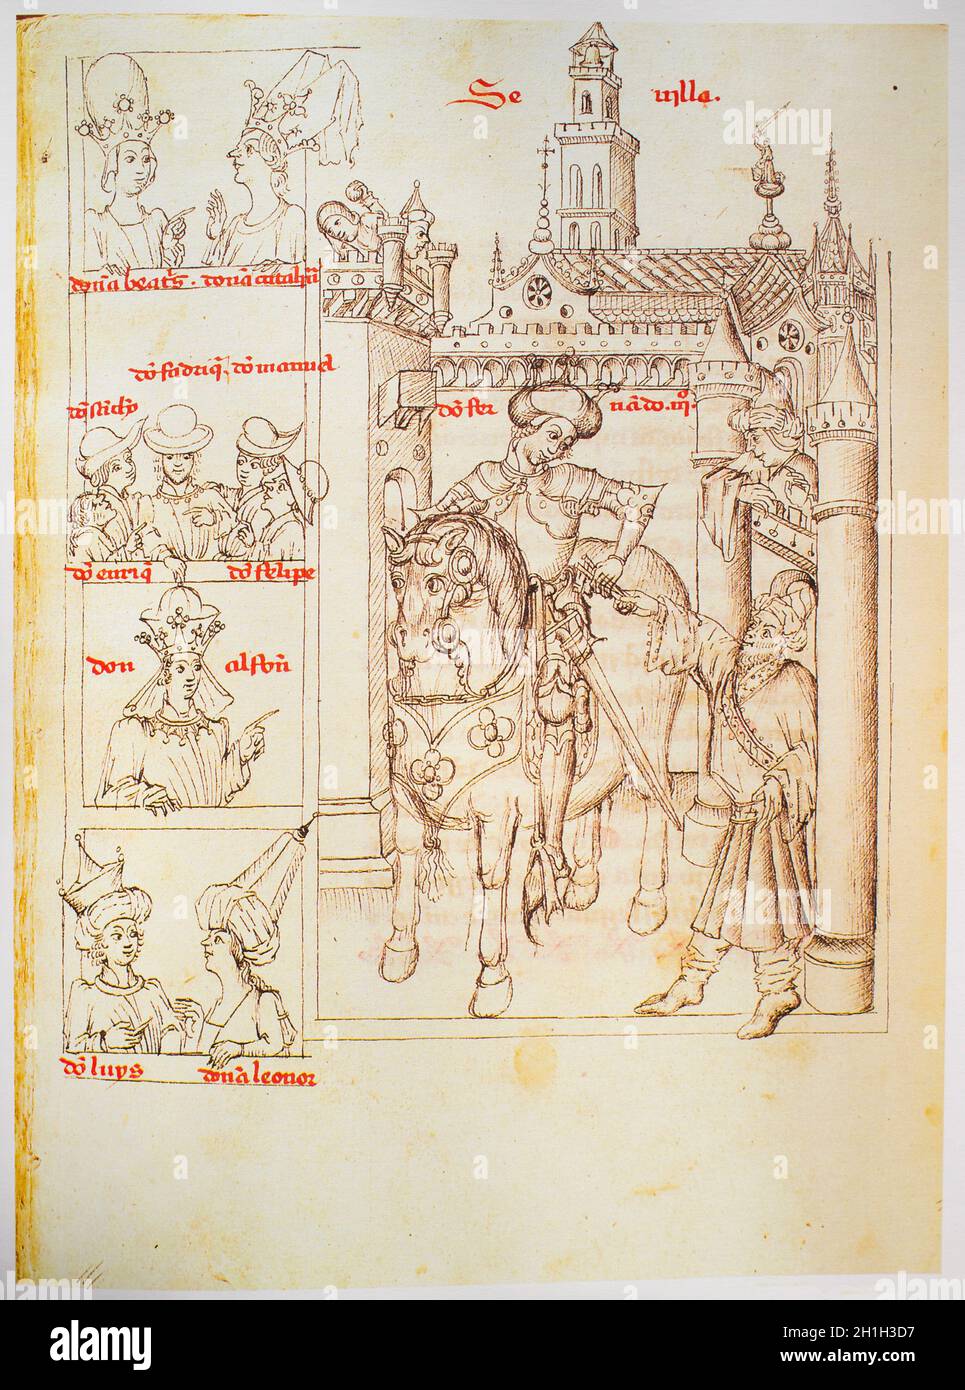 Ferdinand III de Castille à la généalogie des Rois d'Espagne par Alonso de Cartagena, 1456. Bibliothèque royale du Palais, Madrid. Folio 171v Banque D'Images